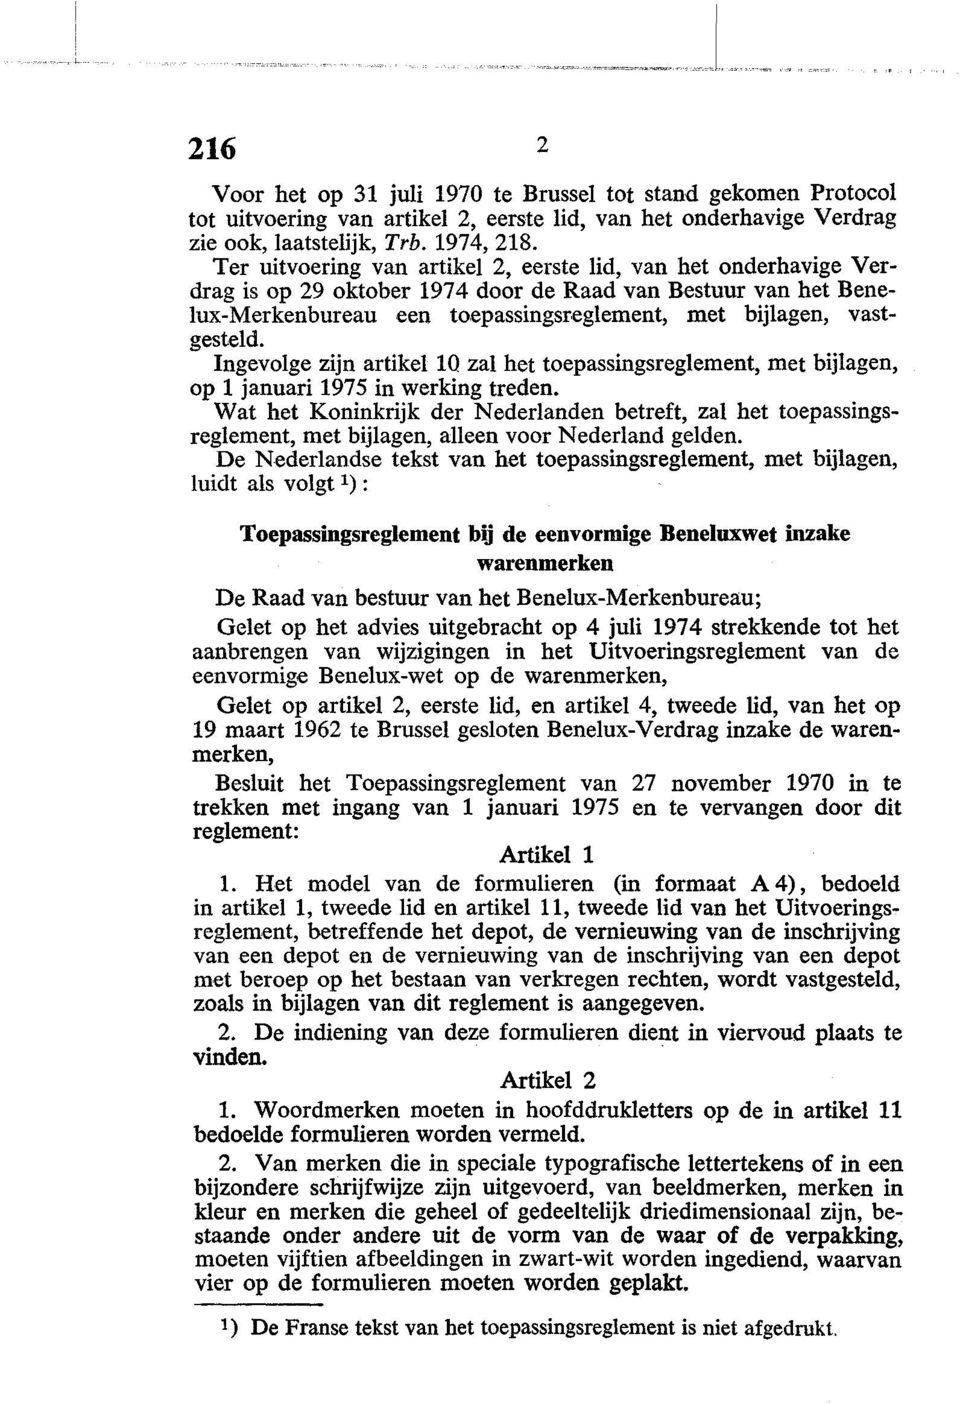 Ingevolge zijn artikel IQ zal het toepassingsreglement, met bijlagen, op 1 januari 1975 in werking treden.